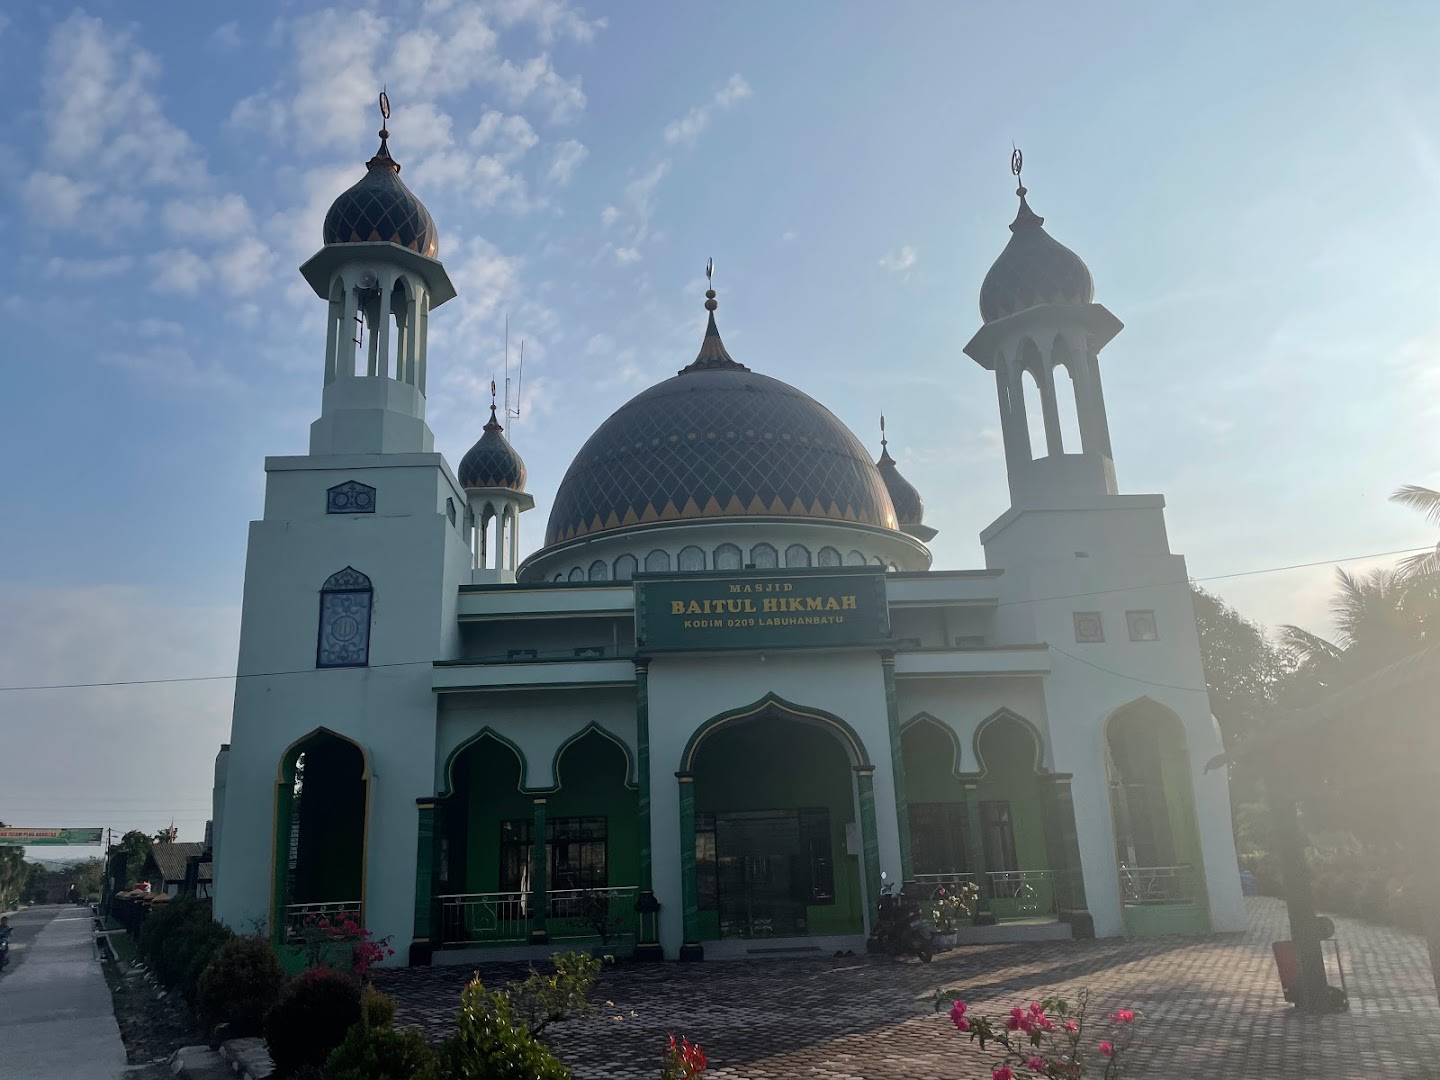 Gambar Masjid Baitul Hikmah